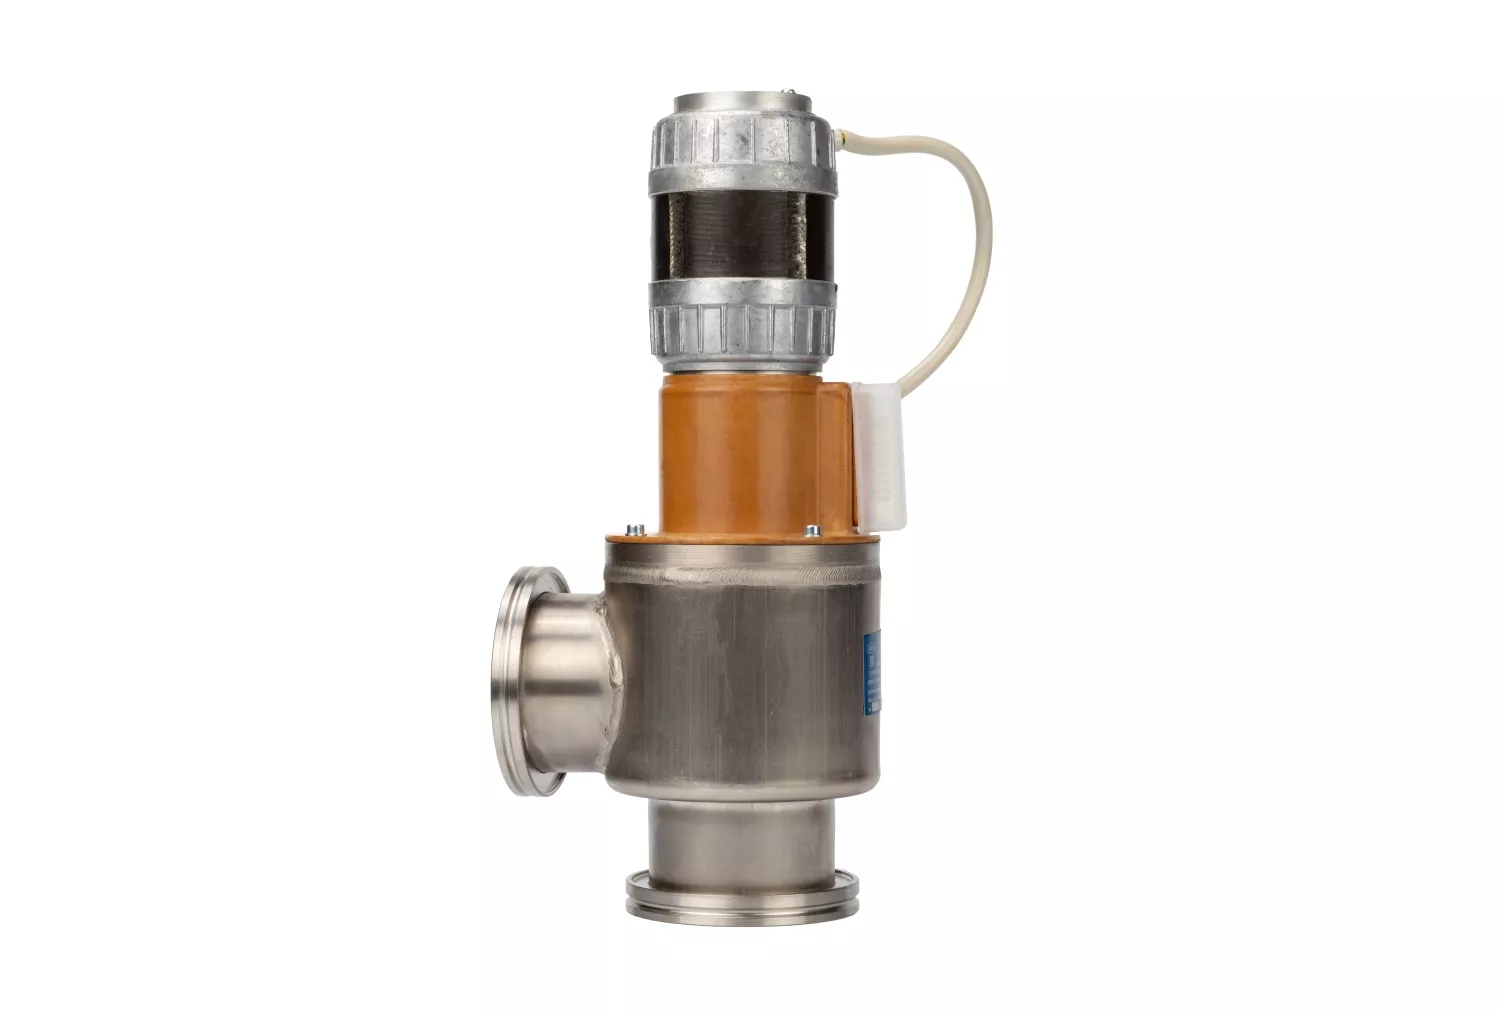 Купить в АО Вакууммаш ✓ Электромеханический вакуумный клапан КВЭ-63 ✦ узнать цены и отзывы в каталоге